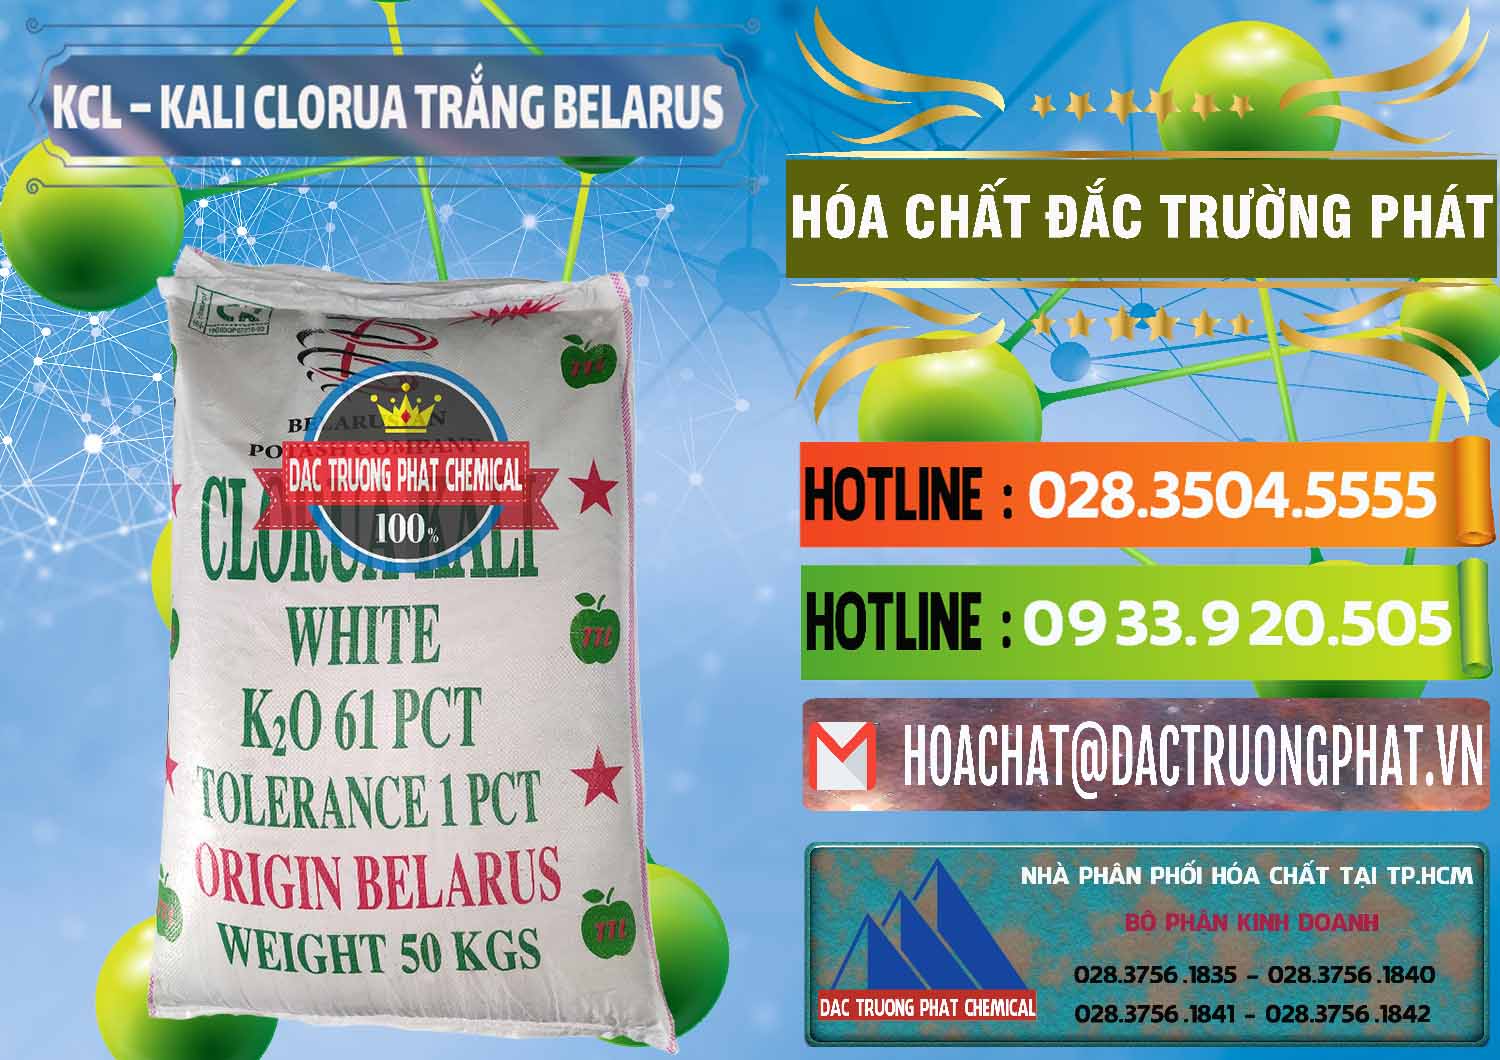 Cty chuyên bán & cung ứng KCL – Kali Clorua Trắng Belarus - 0085 - Công ty phân phối & cung cấp hóa chất tại TP.HCM - cungcaphoachat.com.vn